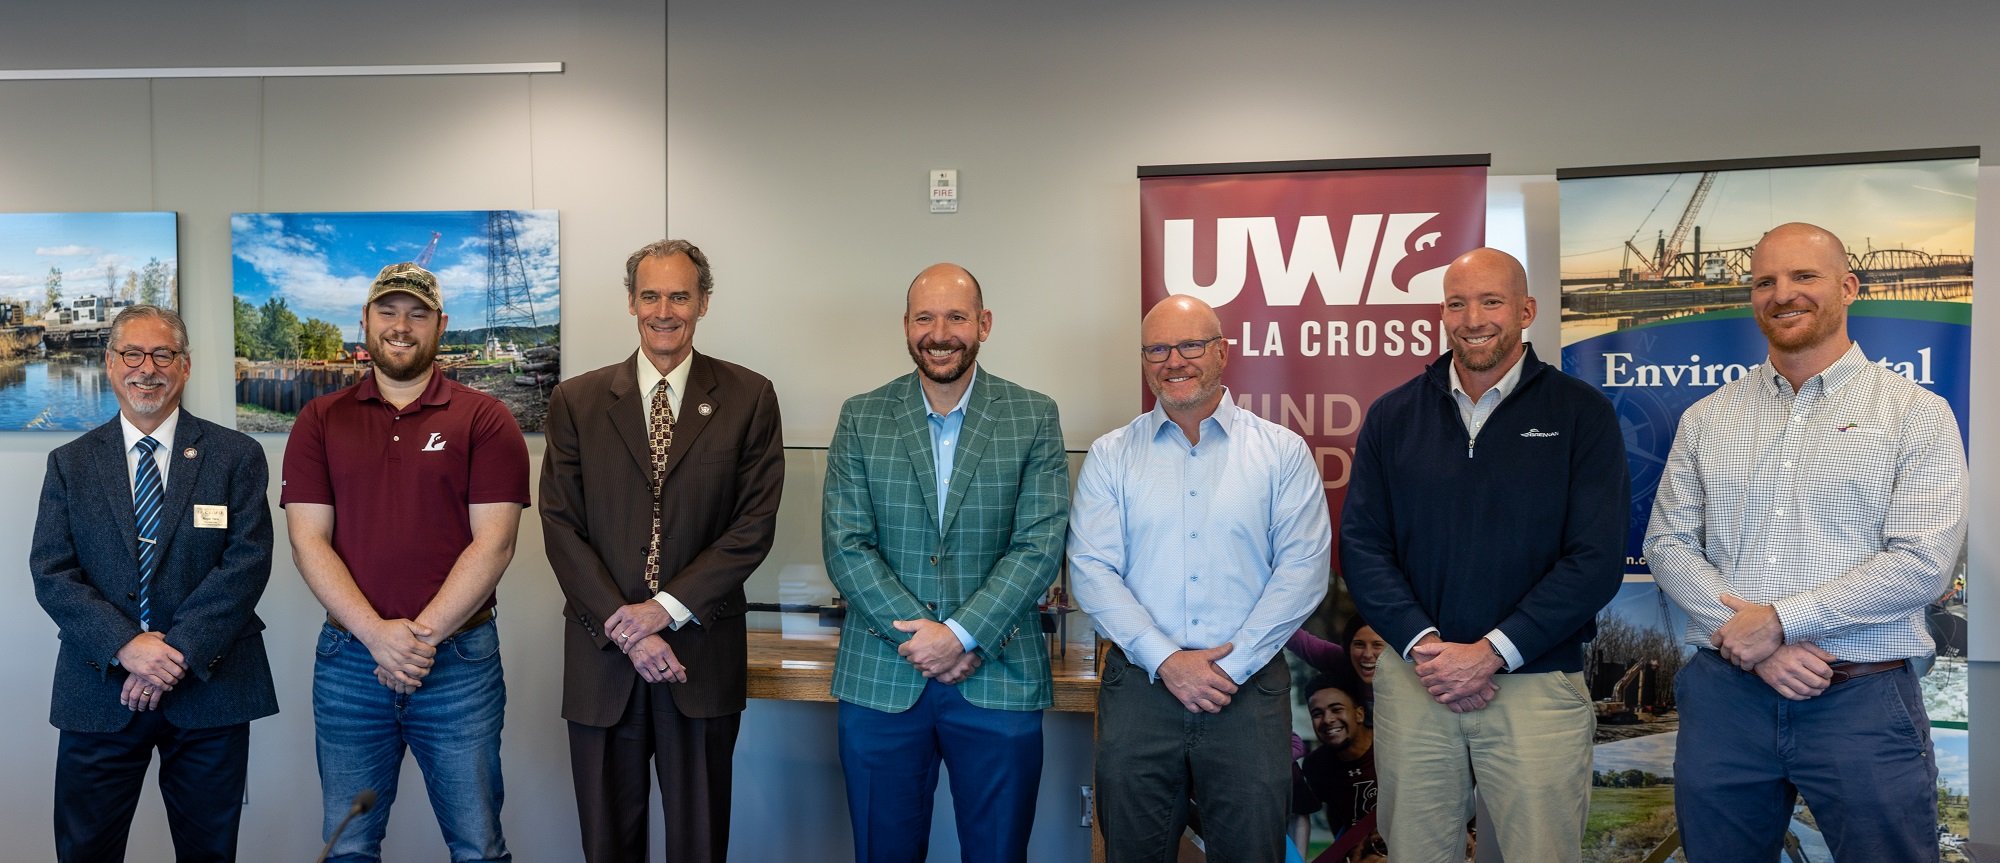 UWL-Partnership-signing-group-photo